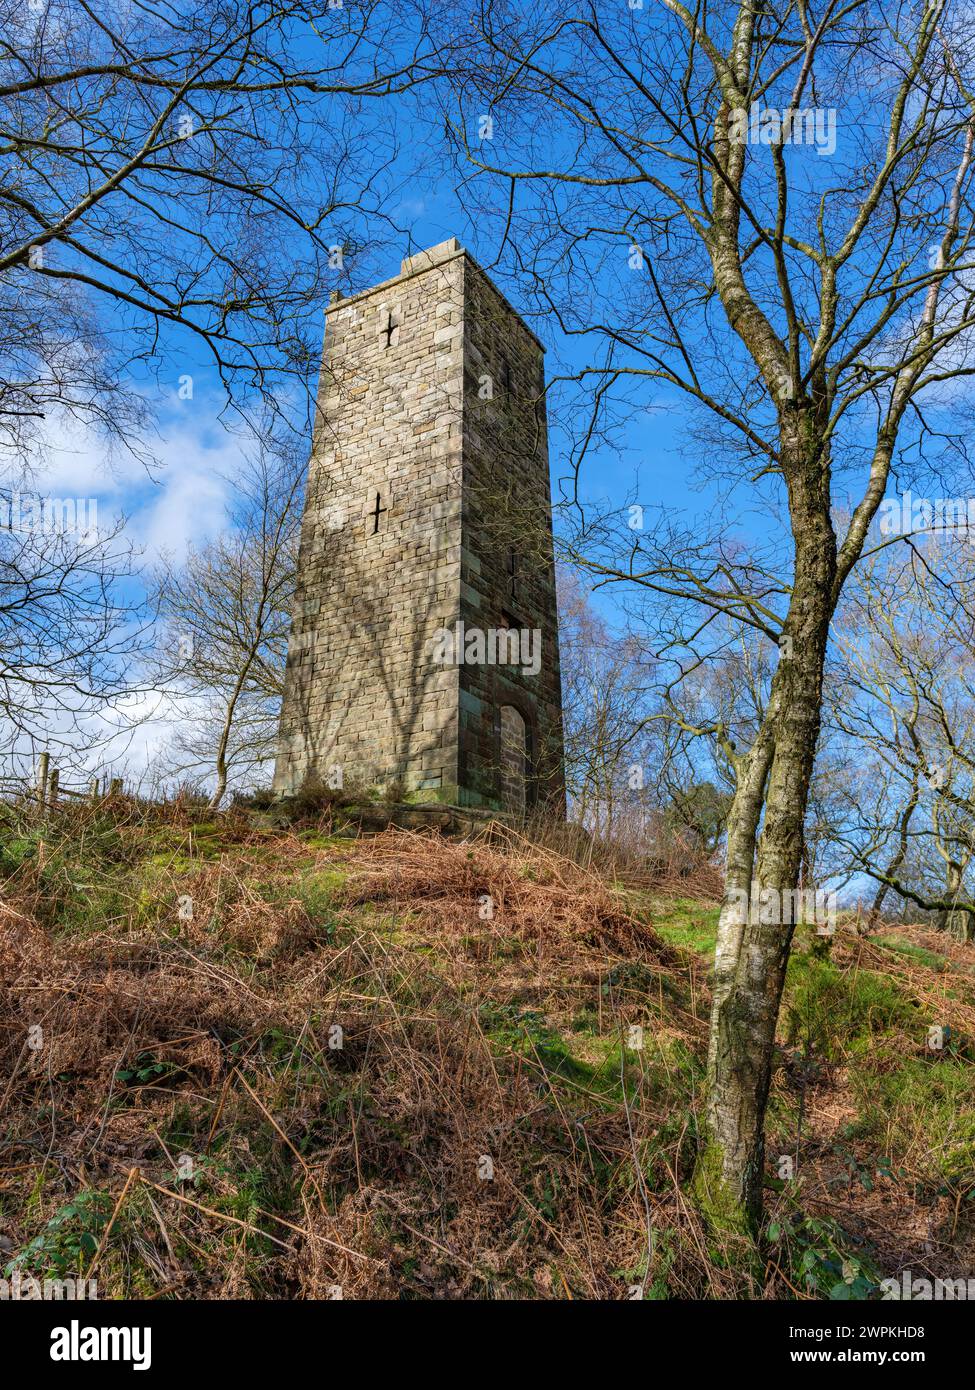 Der Reform Tower oder Earl Grey Tower am Rande des Stanton Moor im Derbyshire Peak District im Vereinigten Königreich wurde zur Feier des Reform Act von 1832 erbaut Stockfoto